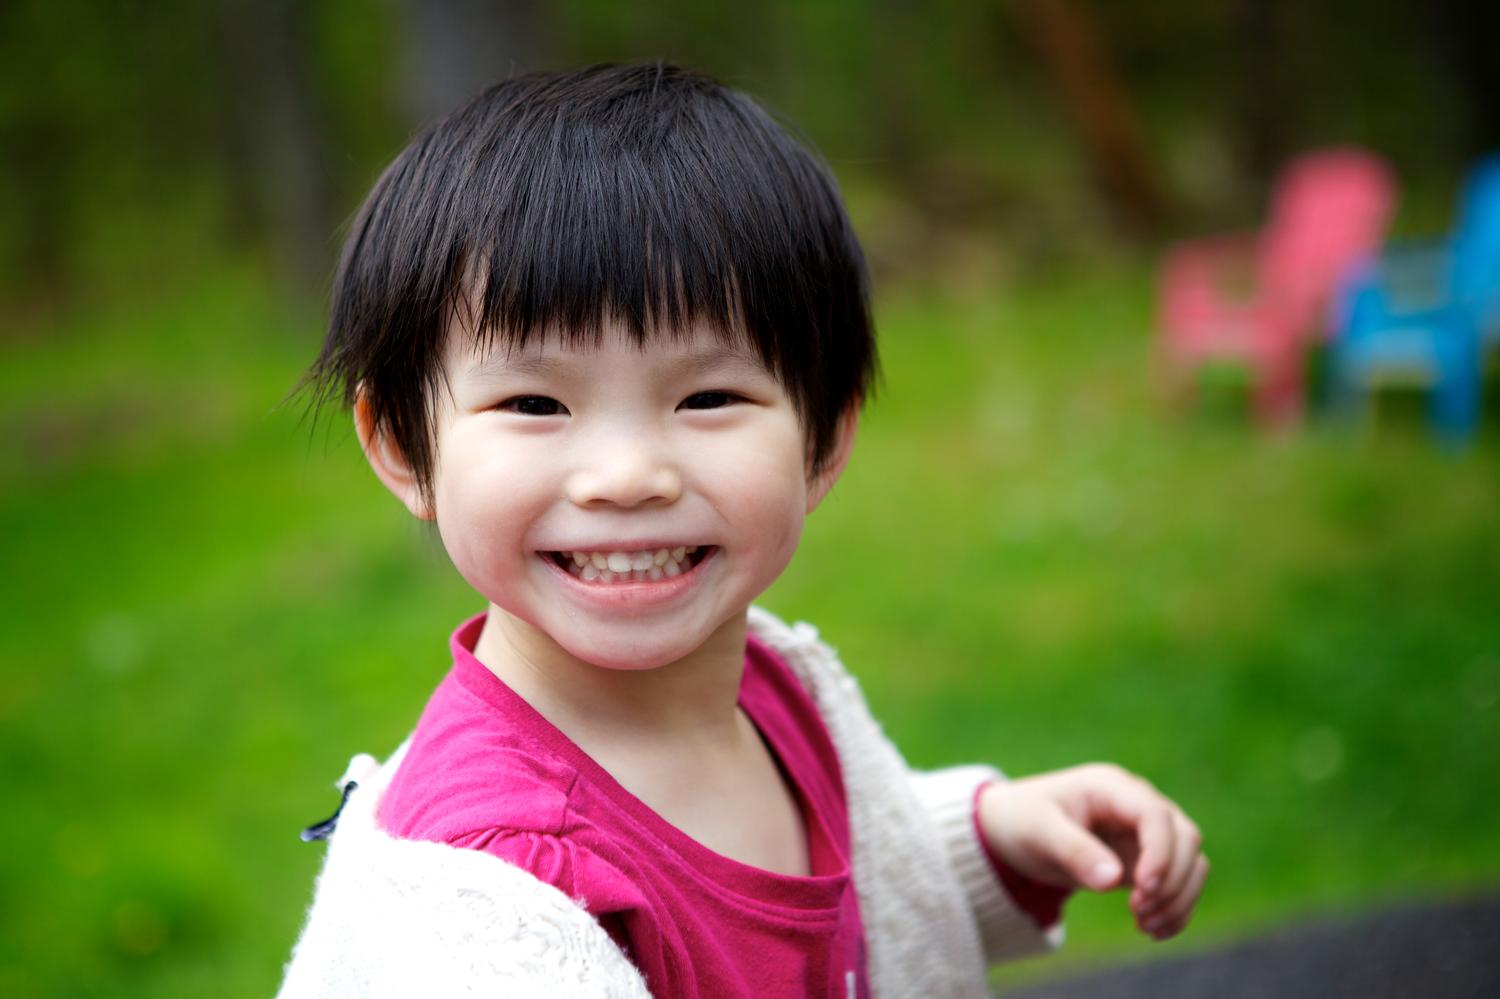 Ютуб азиаты. Счастливые дети азиаты. Дети азиаты улыбаются. Азиат улыбается. Детские стрижки азиаты.